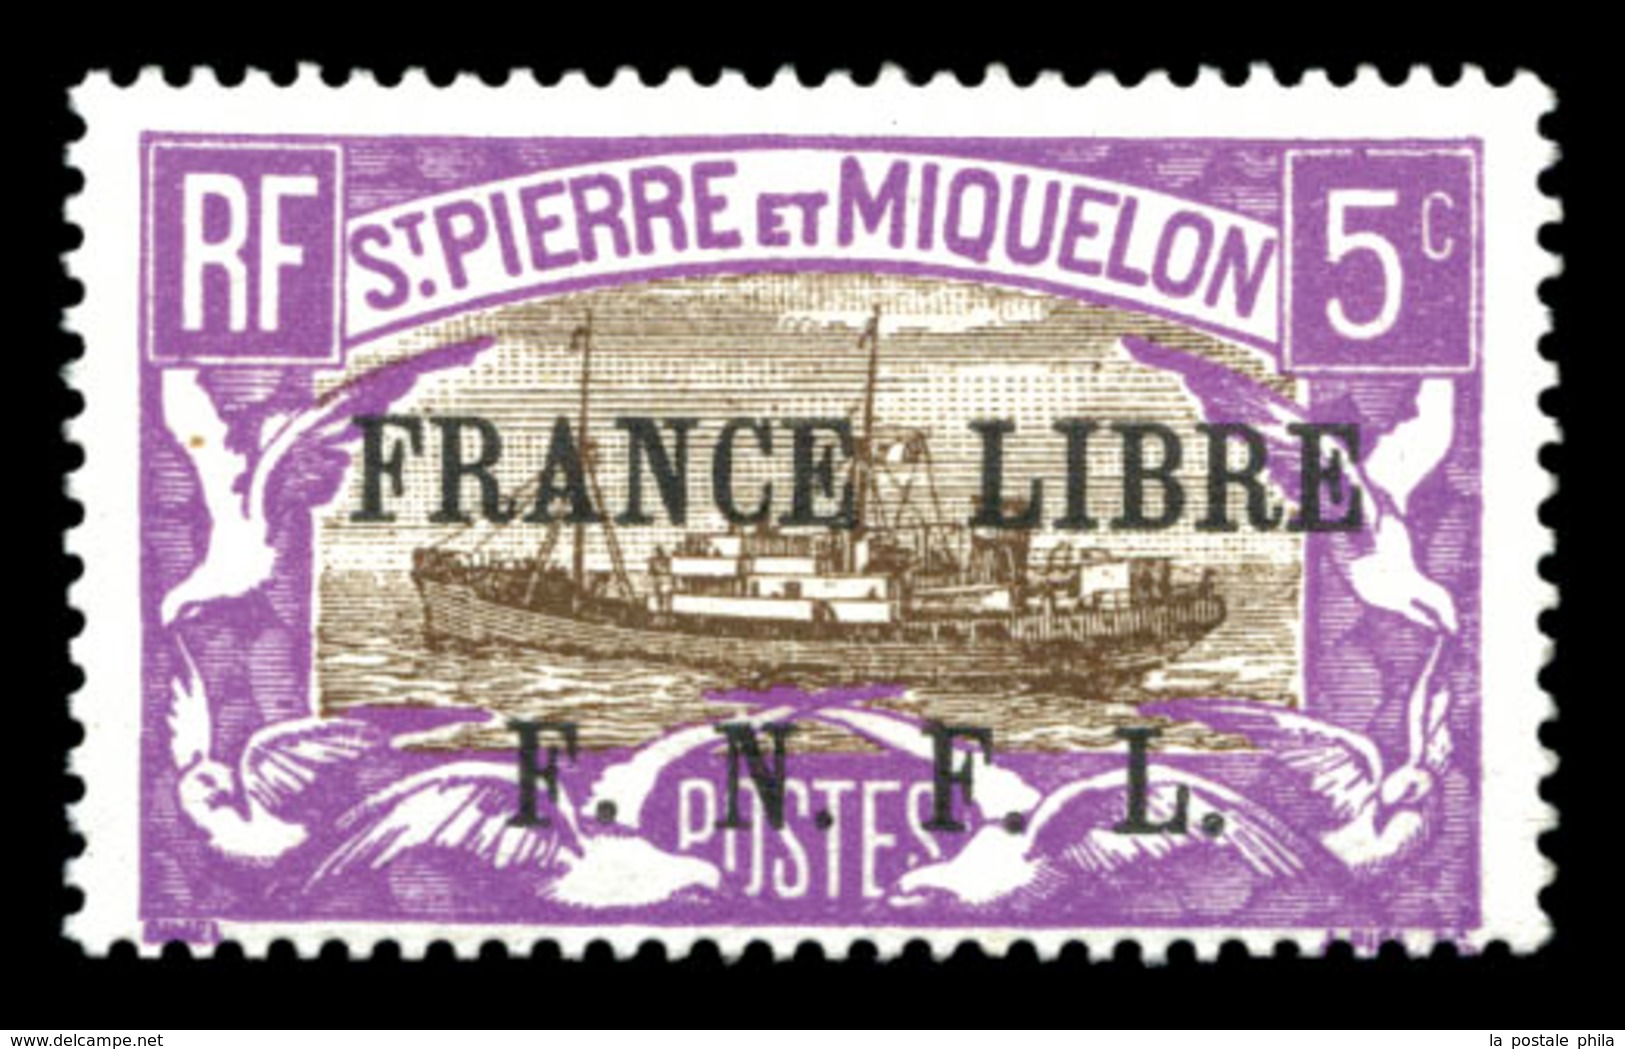 ** N°236, 5c Violet Et Brun Surchargé. SUP. R.R. (certificat)  Qualité: **  Cote: 1560 Euros - Used Stamps